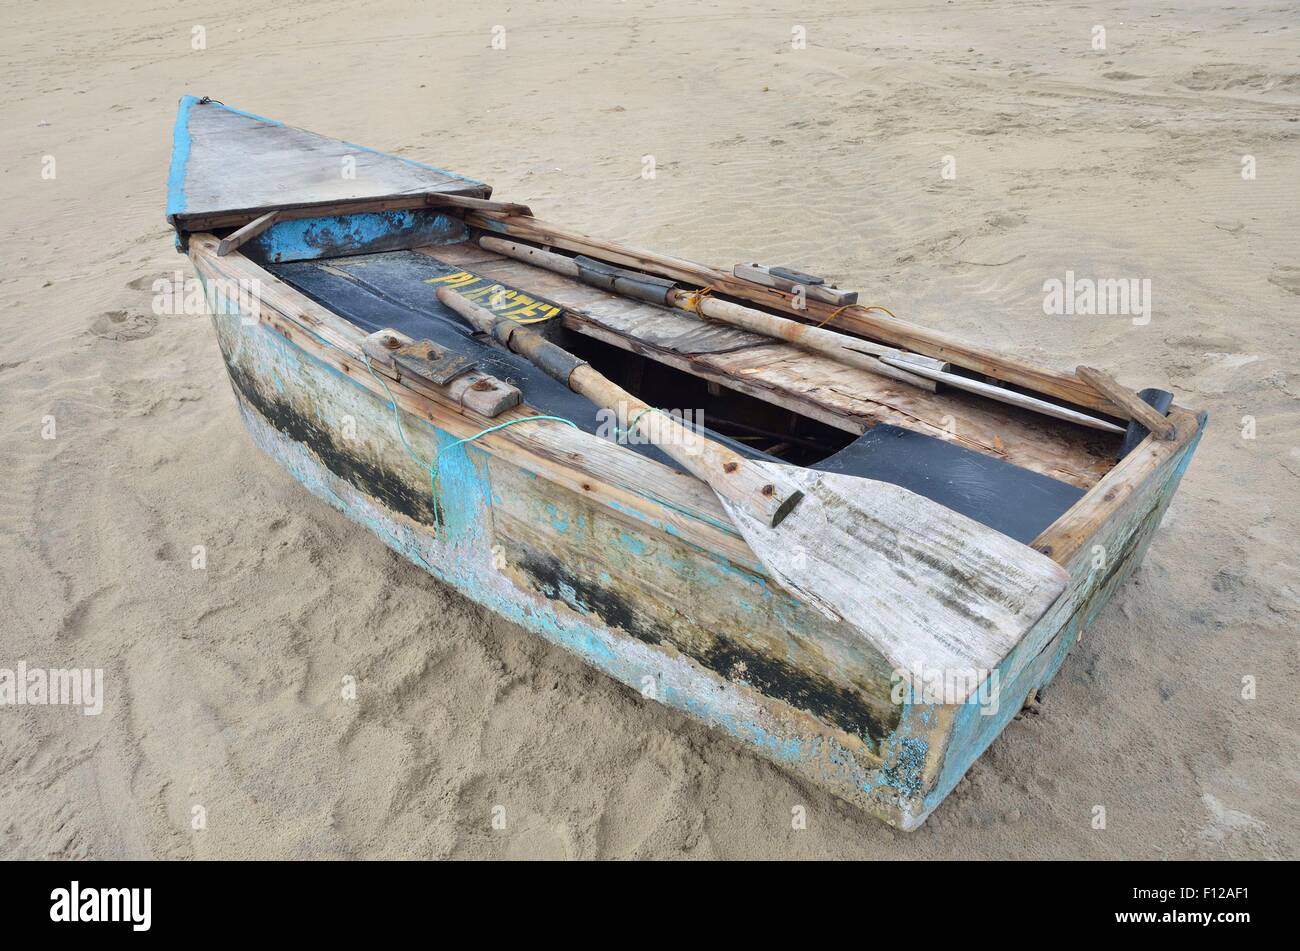 Diese alte, unsichere Fischerboot am Strand von Inhambane, Mosambik liegen ist im täglichen Einsatz. Stockfoto